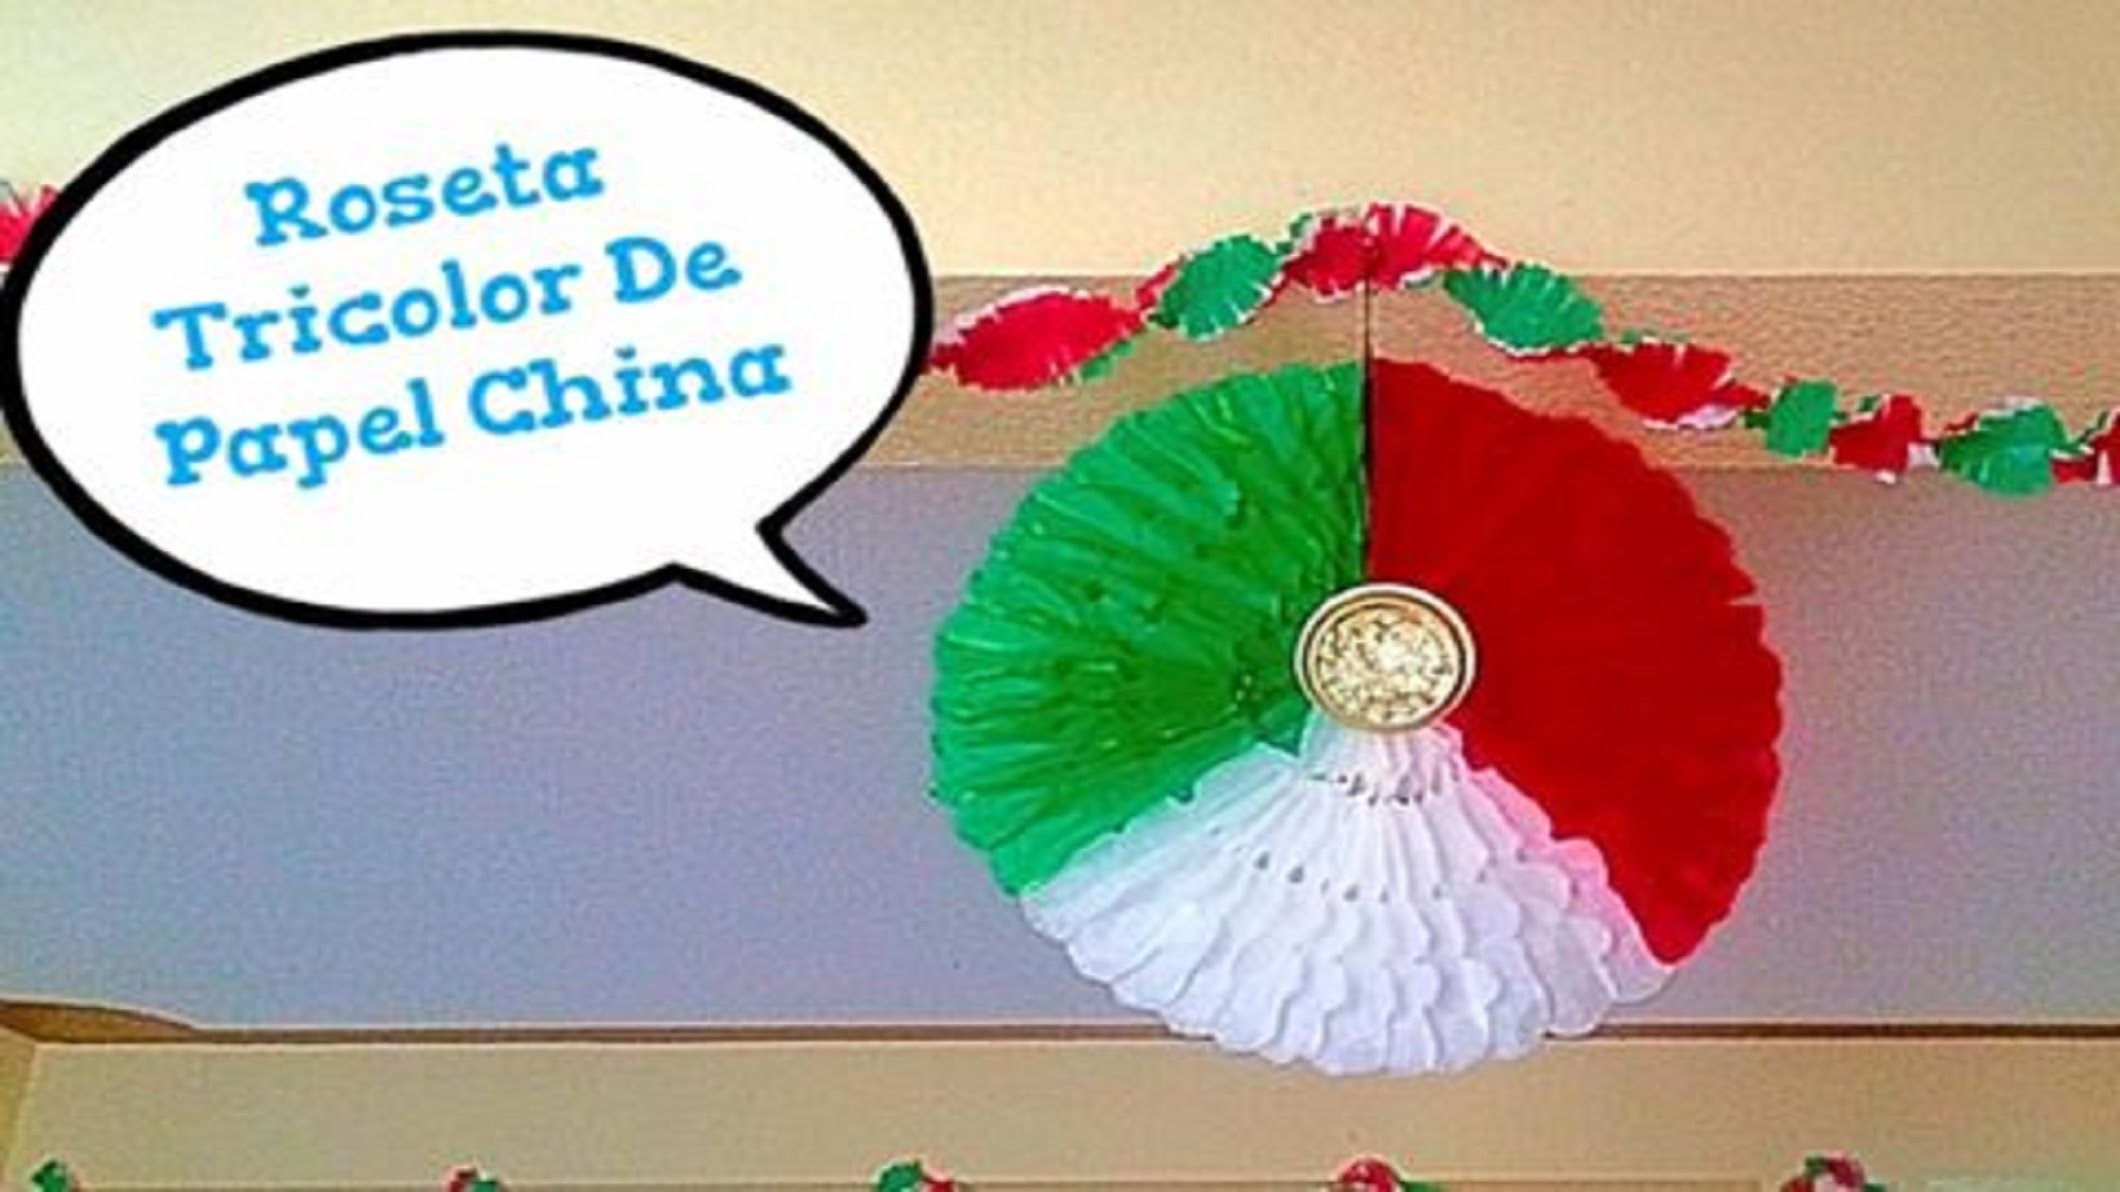 Roseta Tricolor De Papel China (( Colaborativo - Noche Mexicana ))